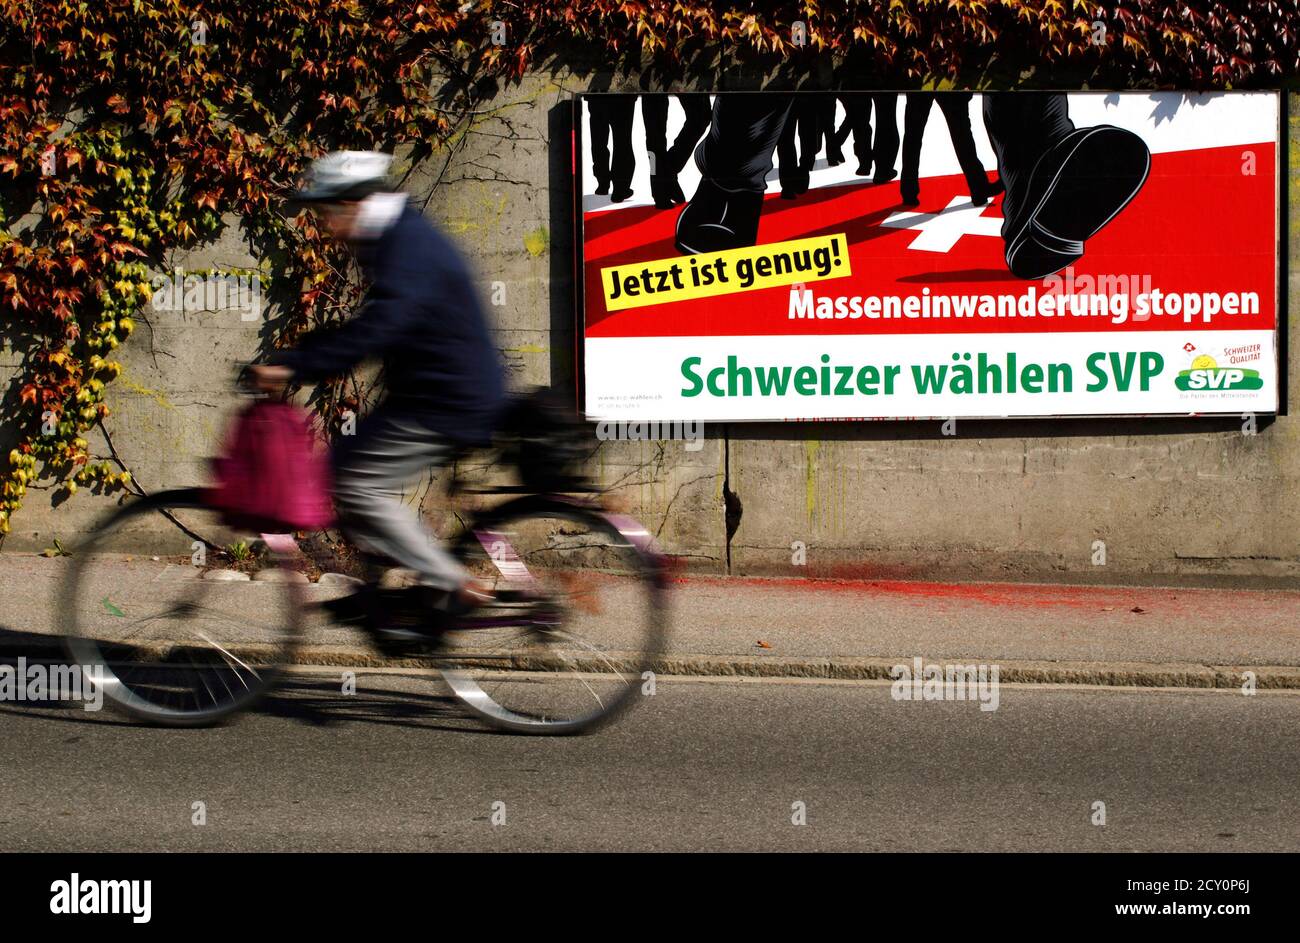 Swiss Peoples Party Poster Stockfotos und -bilder Kaufen - Alamy